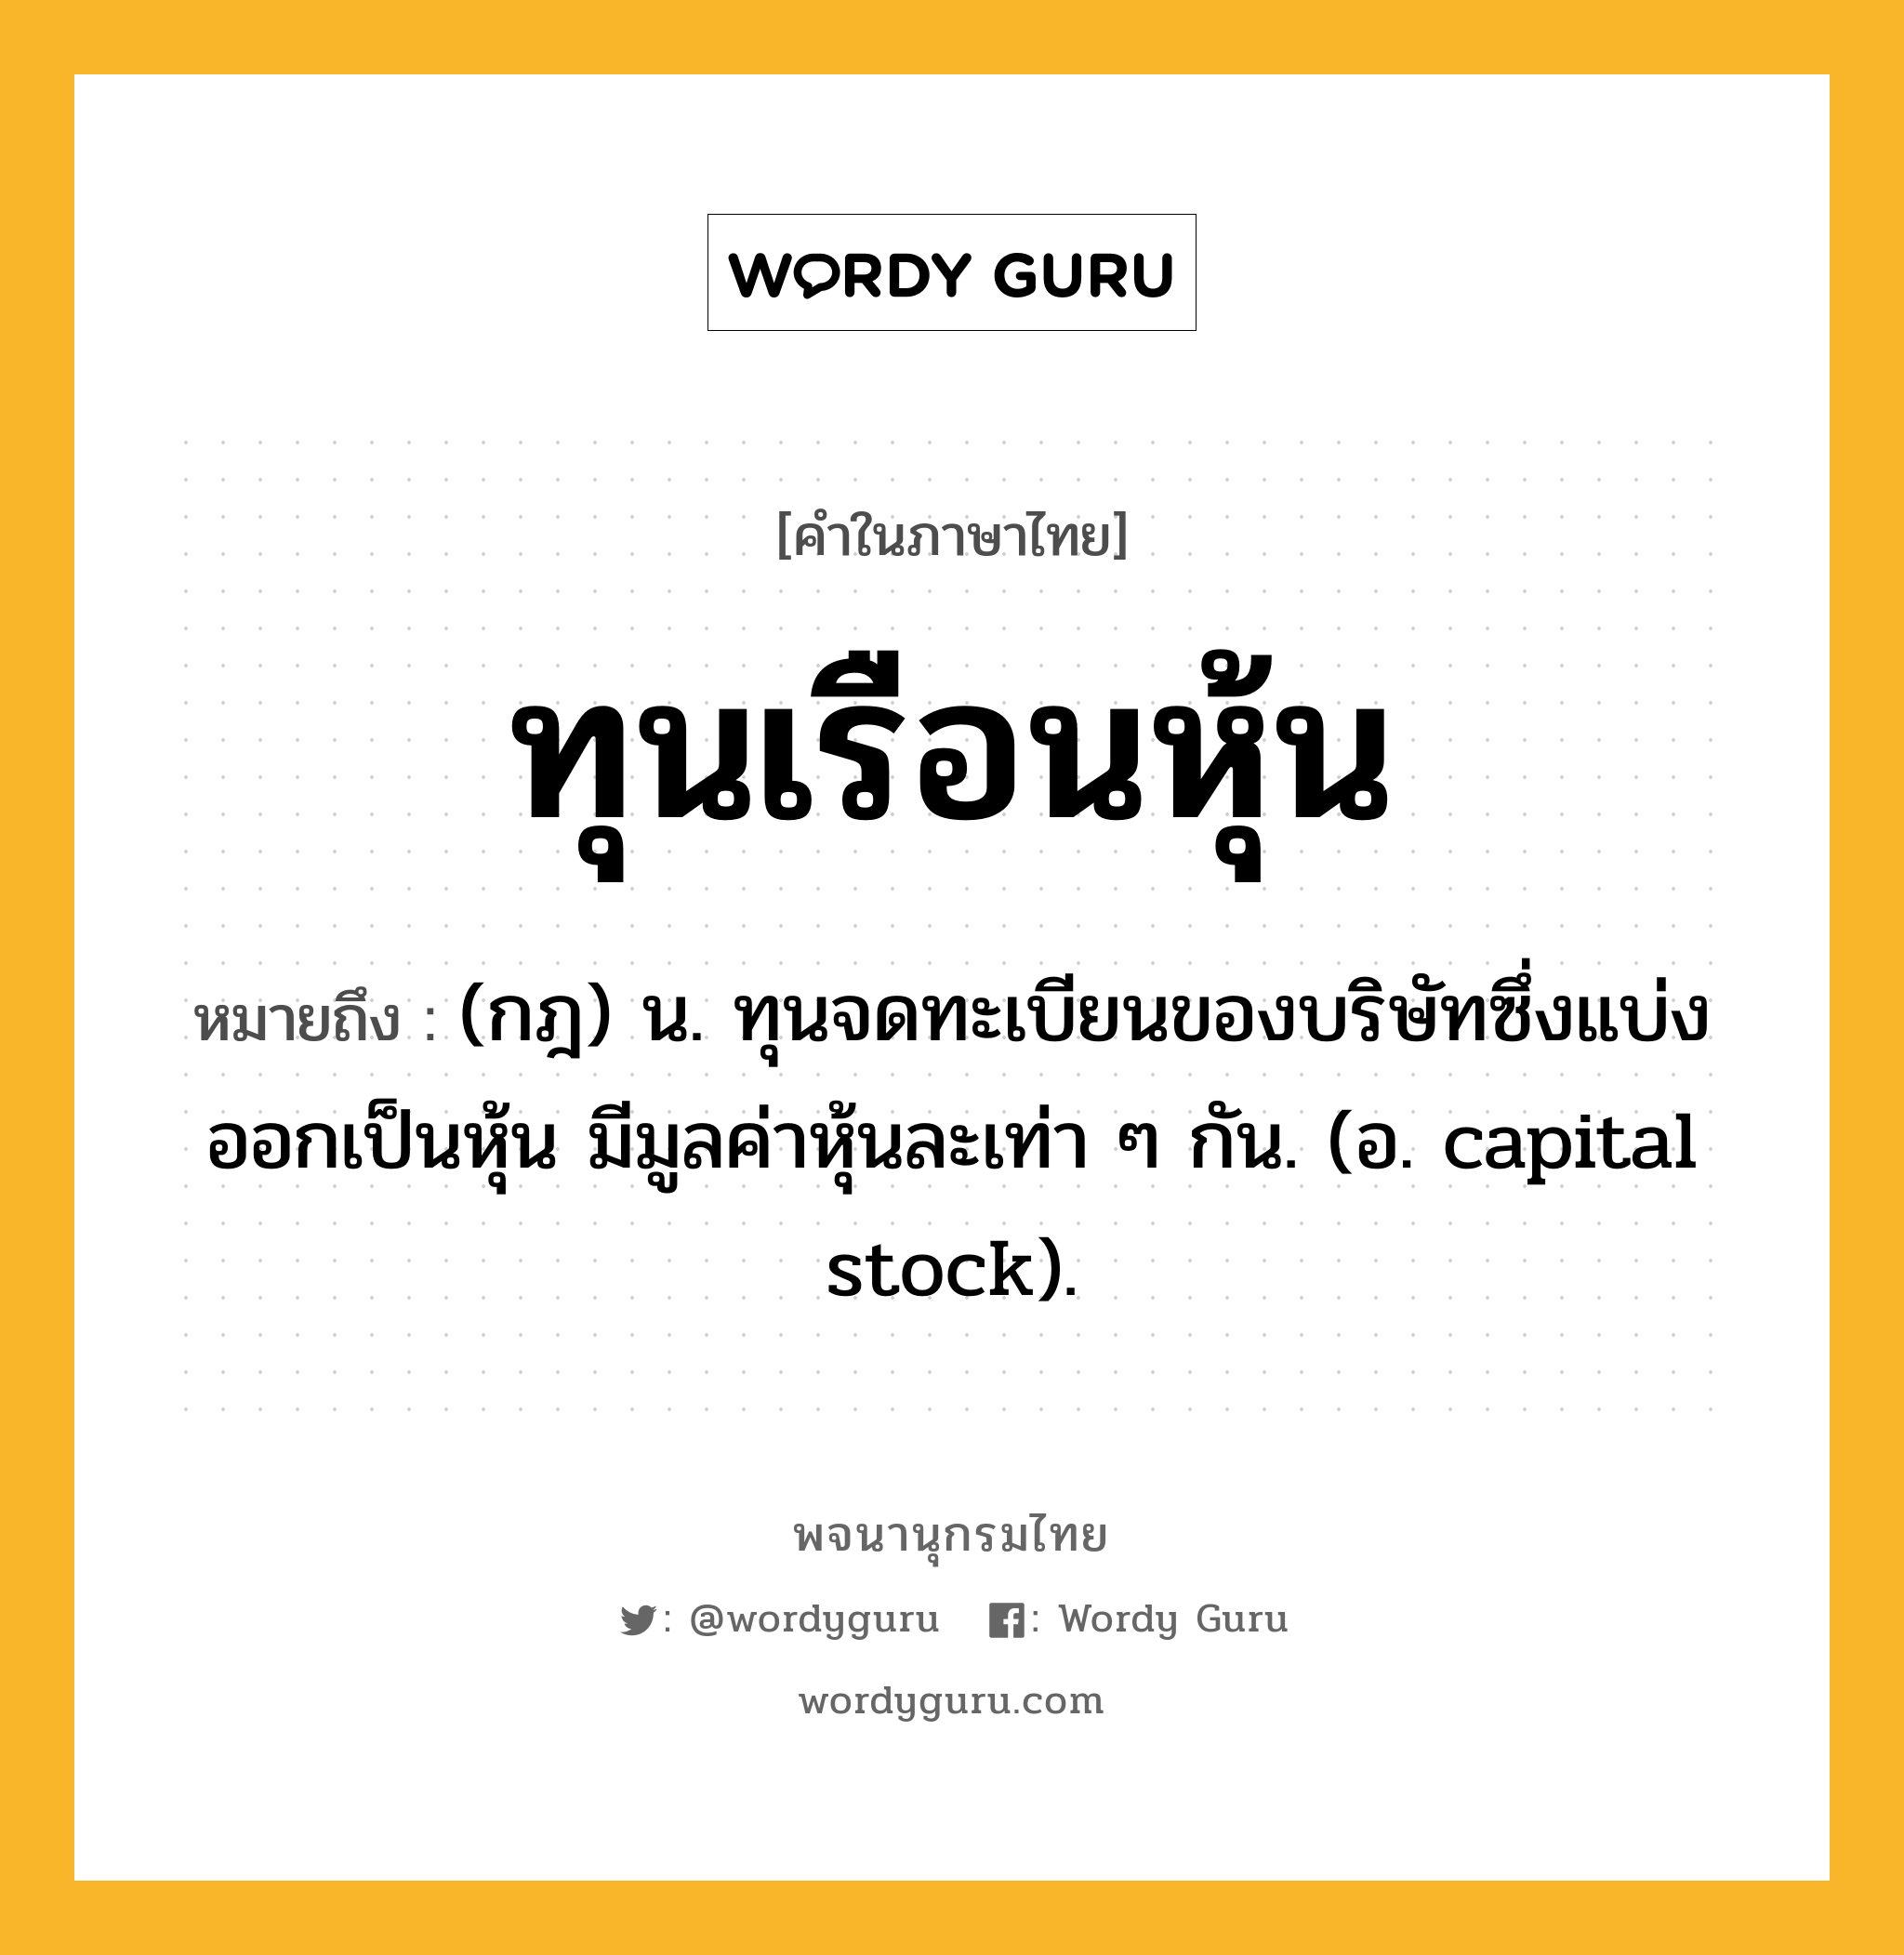 ทุนเรือนหุ้น หมายถึงอะไร?, คำในภาษาไทย ทุนเรือนหุ้น หมายถึง (กฎ) น. ทุนจดทะเบียนของบริษัทซึ่งแบ่งออกเป็นหุ้น มีมูลค่าหุ้นละเท่า ๆ กัน. (อ. capital stock).